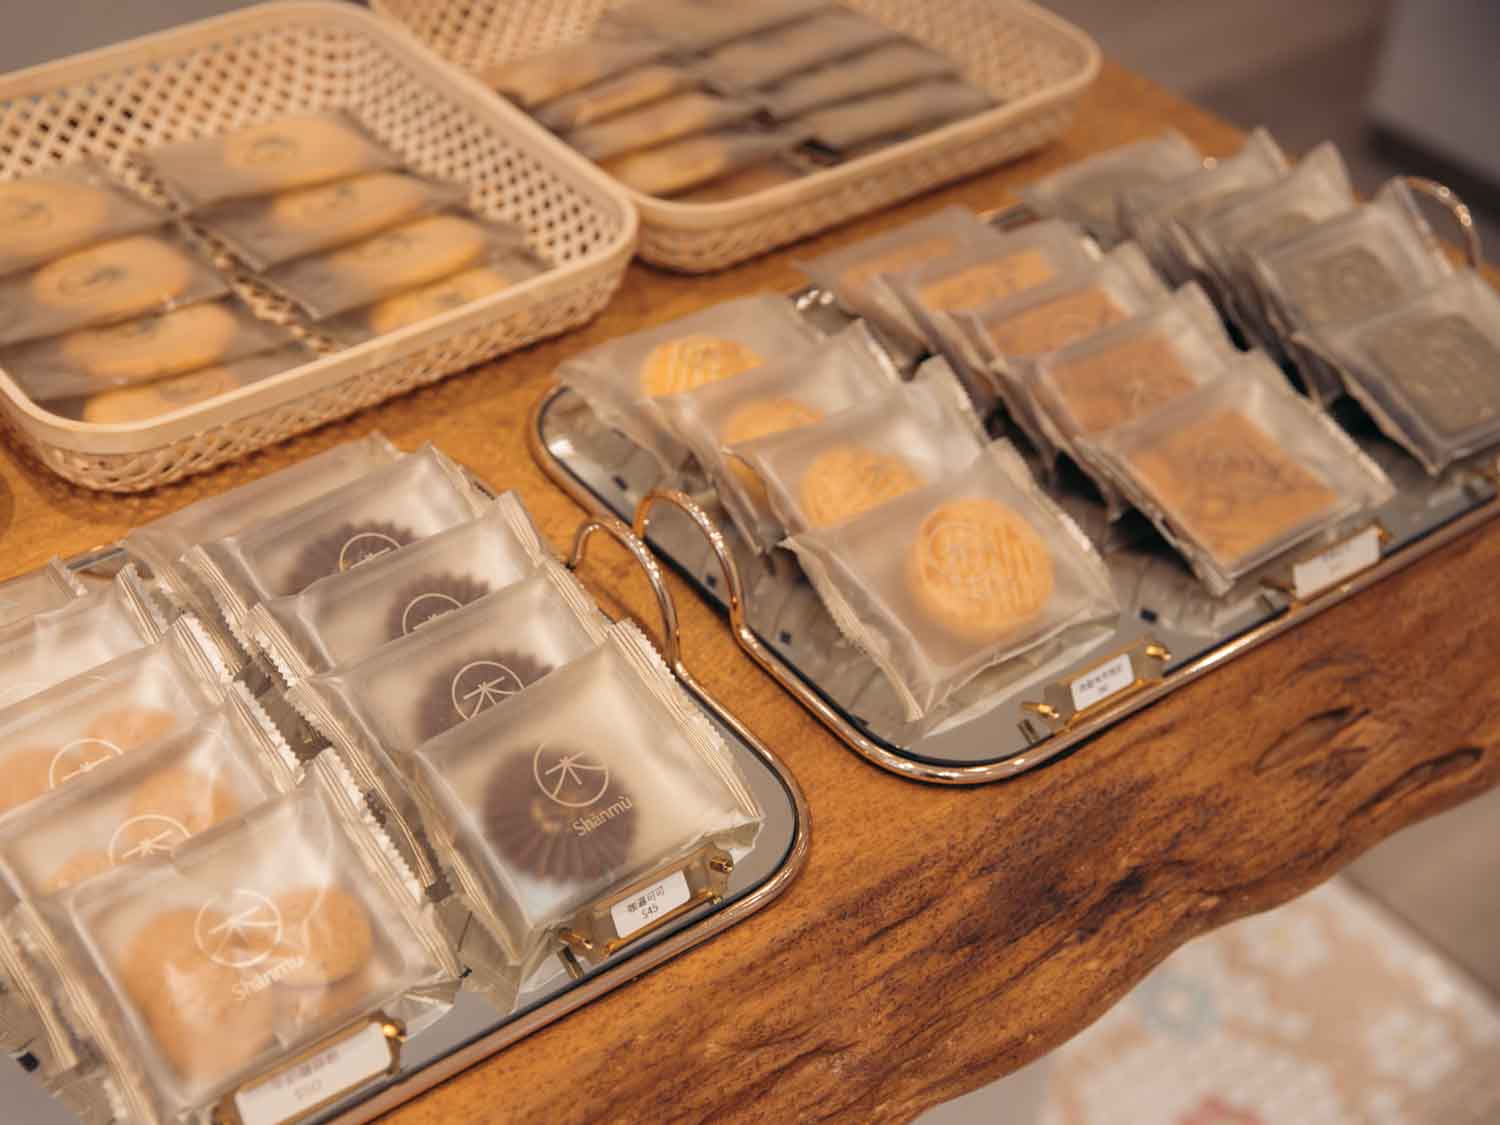 台中-山木島Shanmu，喜餅、彌月禮盒、伴手禮、茶詩蛋糕、價格、試吃評價